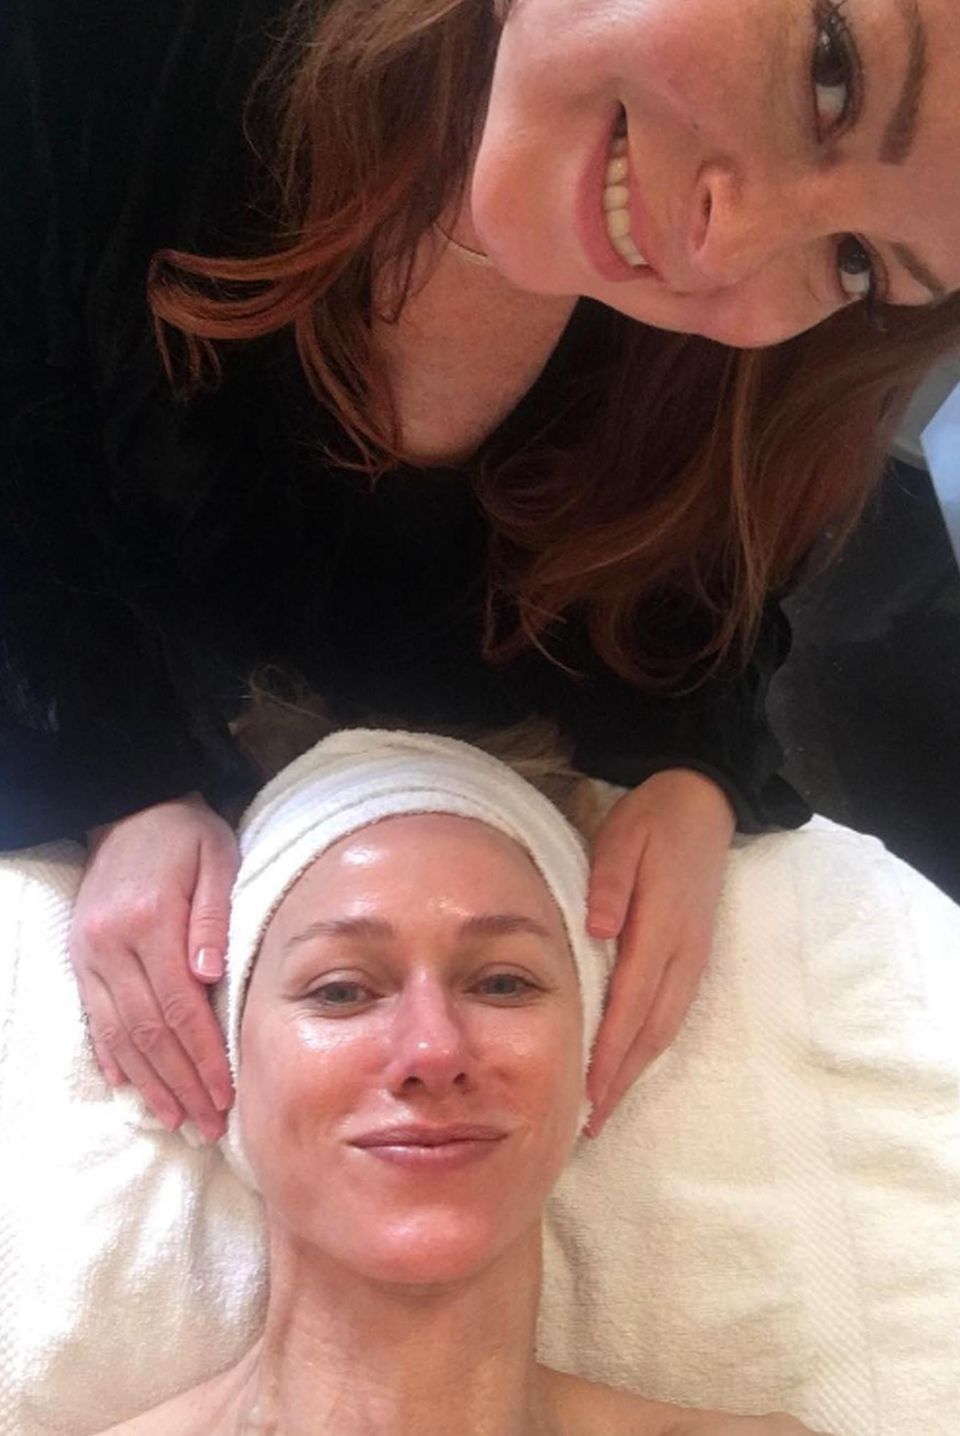 Naomi Watts verbringt ihren freien Tag bei der Kosmetikerin. Bei Joanna Vargas in New York kann sie offenbar besonders gut entspannen. "Wir sind gute Freunde geworden, denn sie kann mit ihren Händen zaubern und sie schwört mir, dass ich nicht schnarche", scherzt die Schauspielerin zu diesem Bild, das sie nach dem Facial auf Instagram teilt.